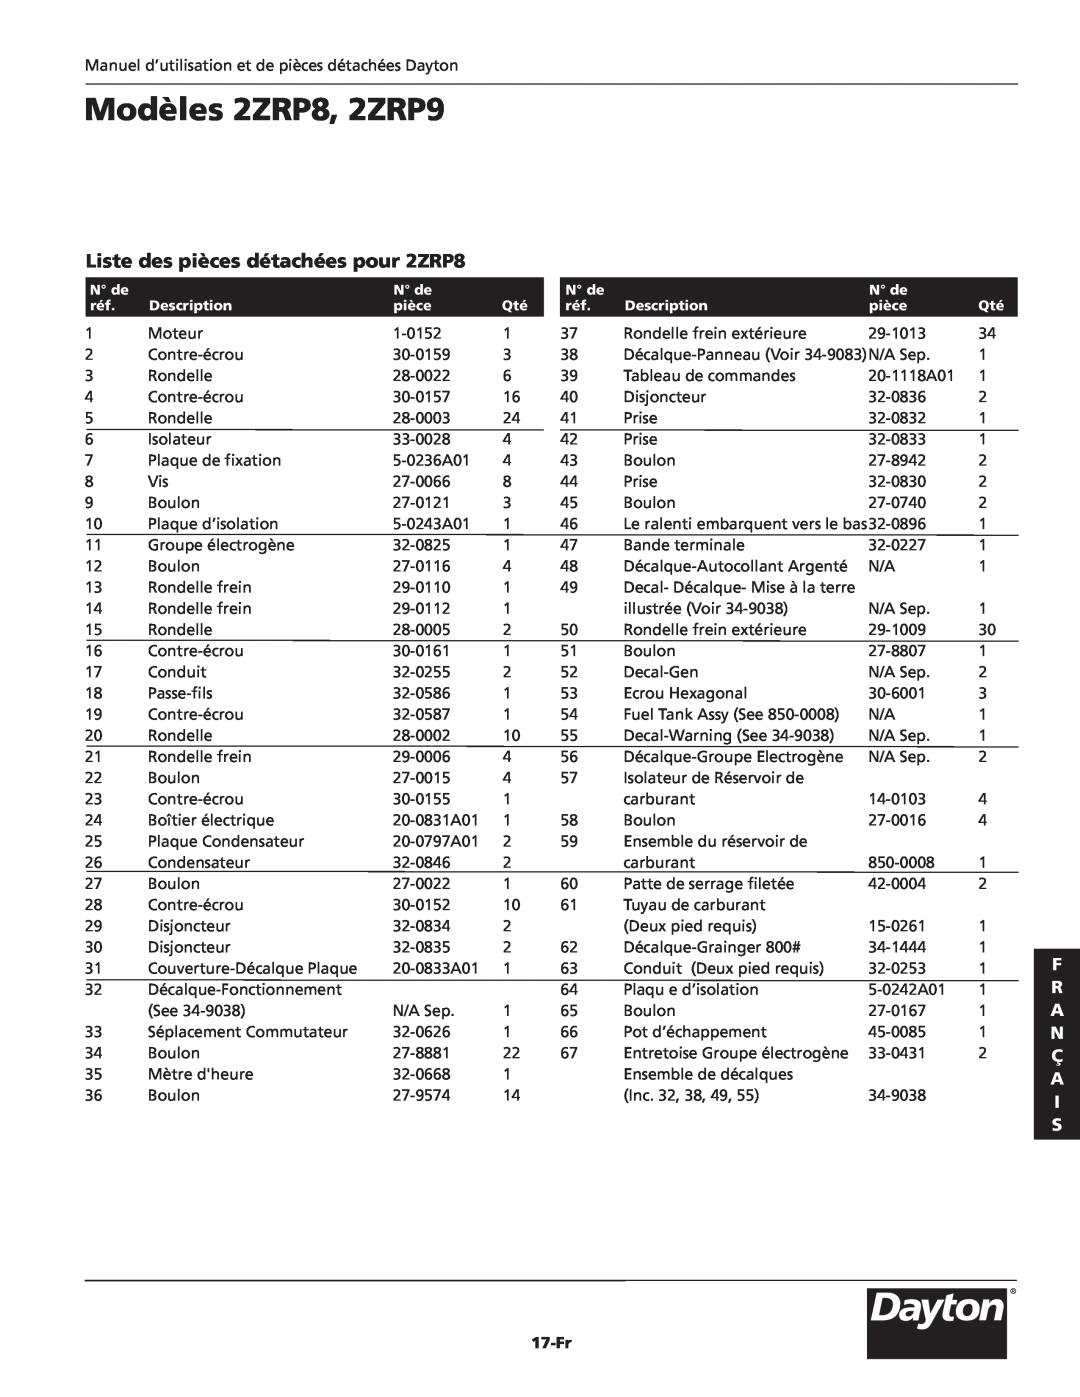 Dayton specifications Liste des pièces détachées pour 2ZRP8, Modèles 2ZRP8, 2ZRP9, F R A N Ç A I S, 17-Fr 